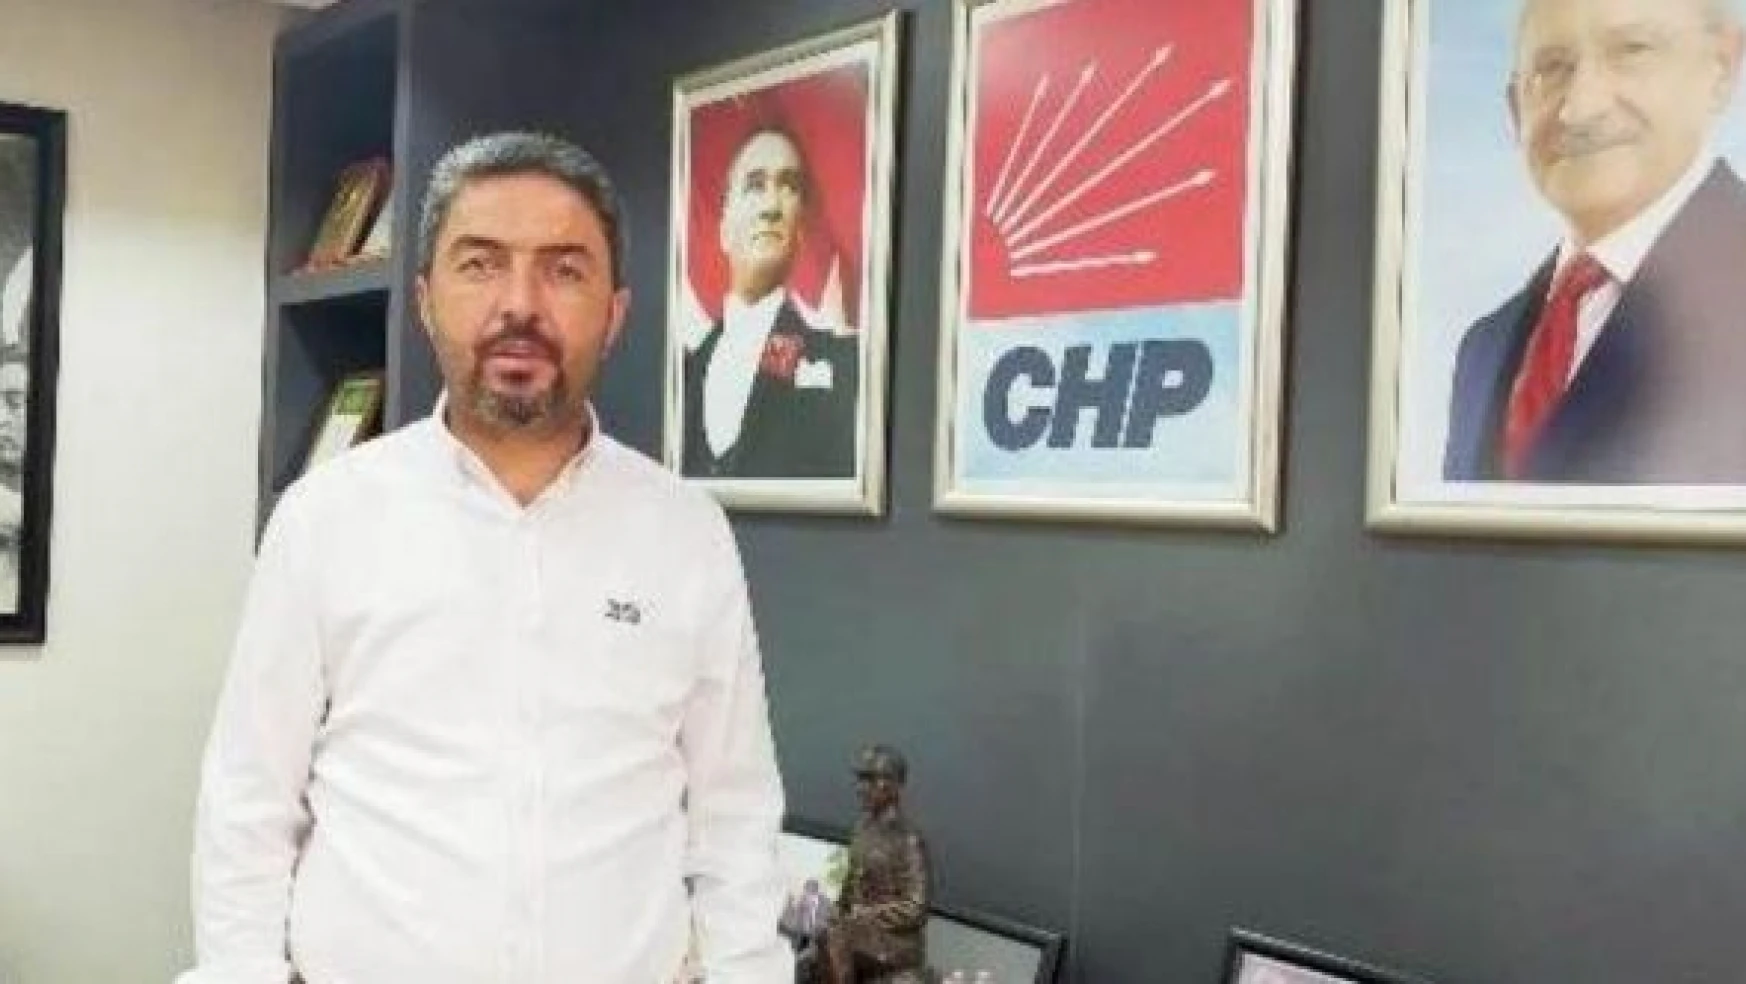 CHP'li Kiraz: "Ülke beslenme ve gıda krizine gidiyor"